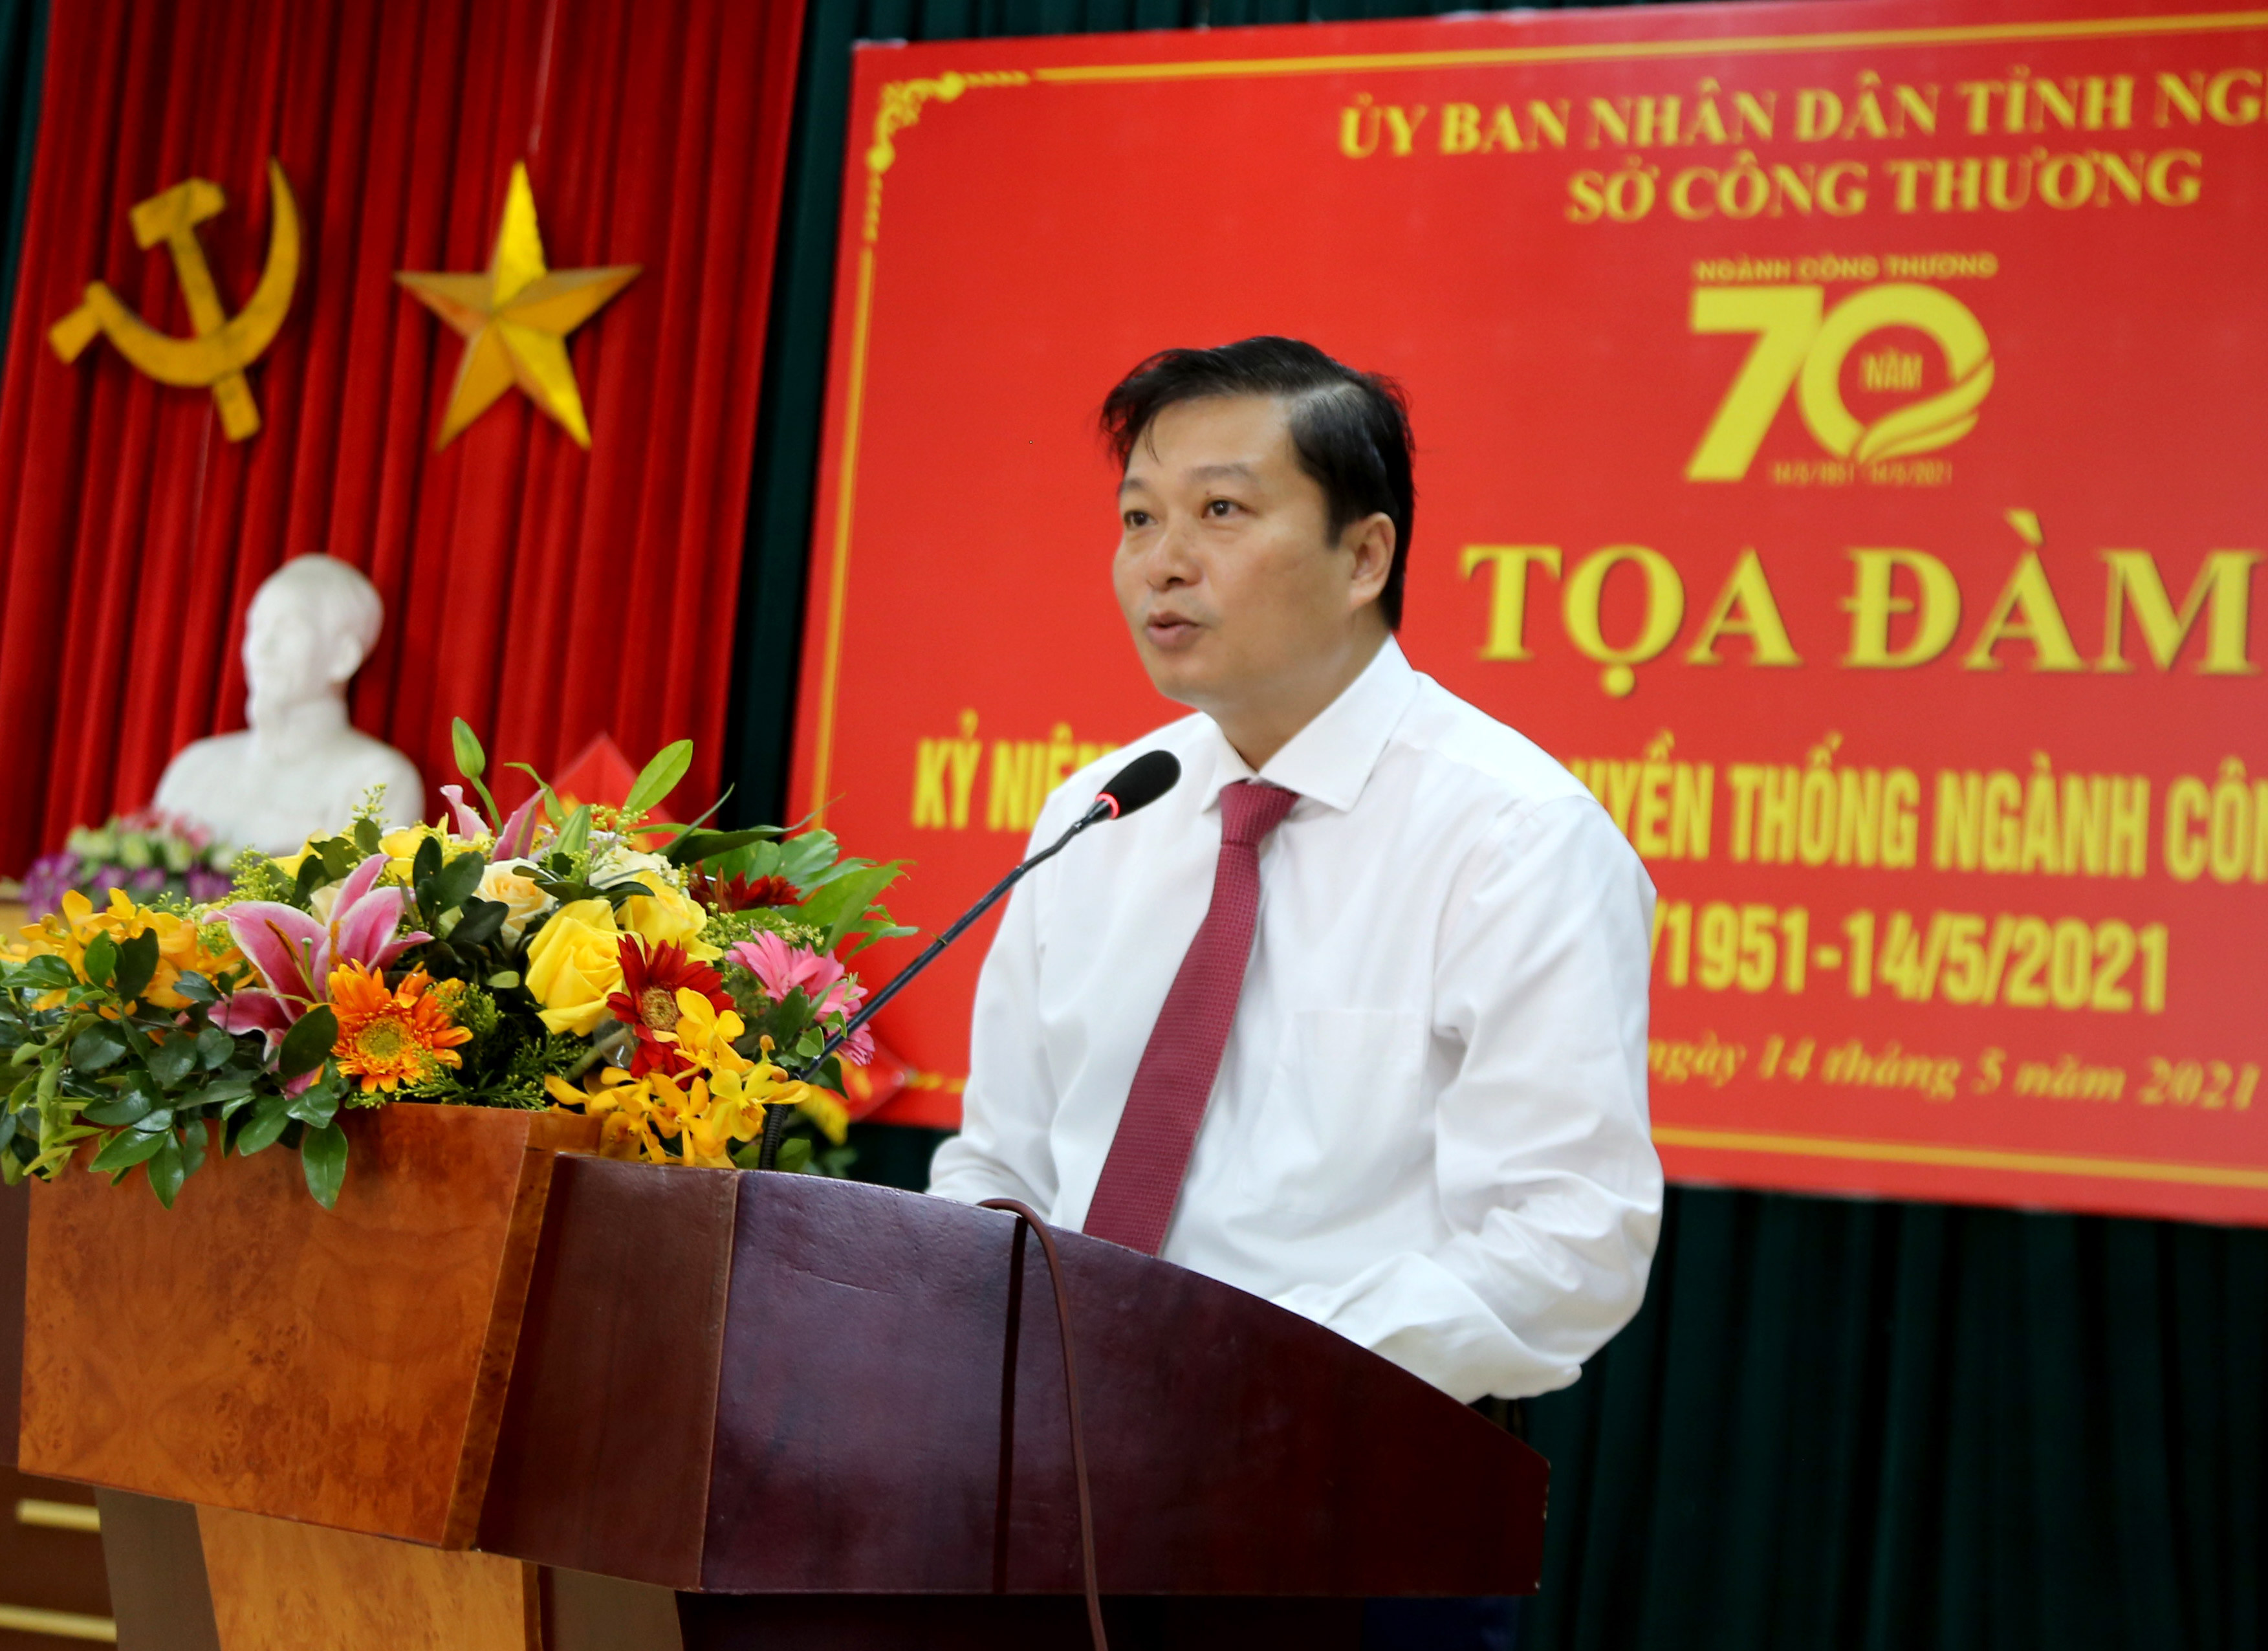 Phó chủ tịch UBND tỉnh Lê Hồng Vinh phát biểu tại lễ Tọa đàm kỷ niệm 70 năm truyền thống ngành công thương. Ảnh: Thu Huyền